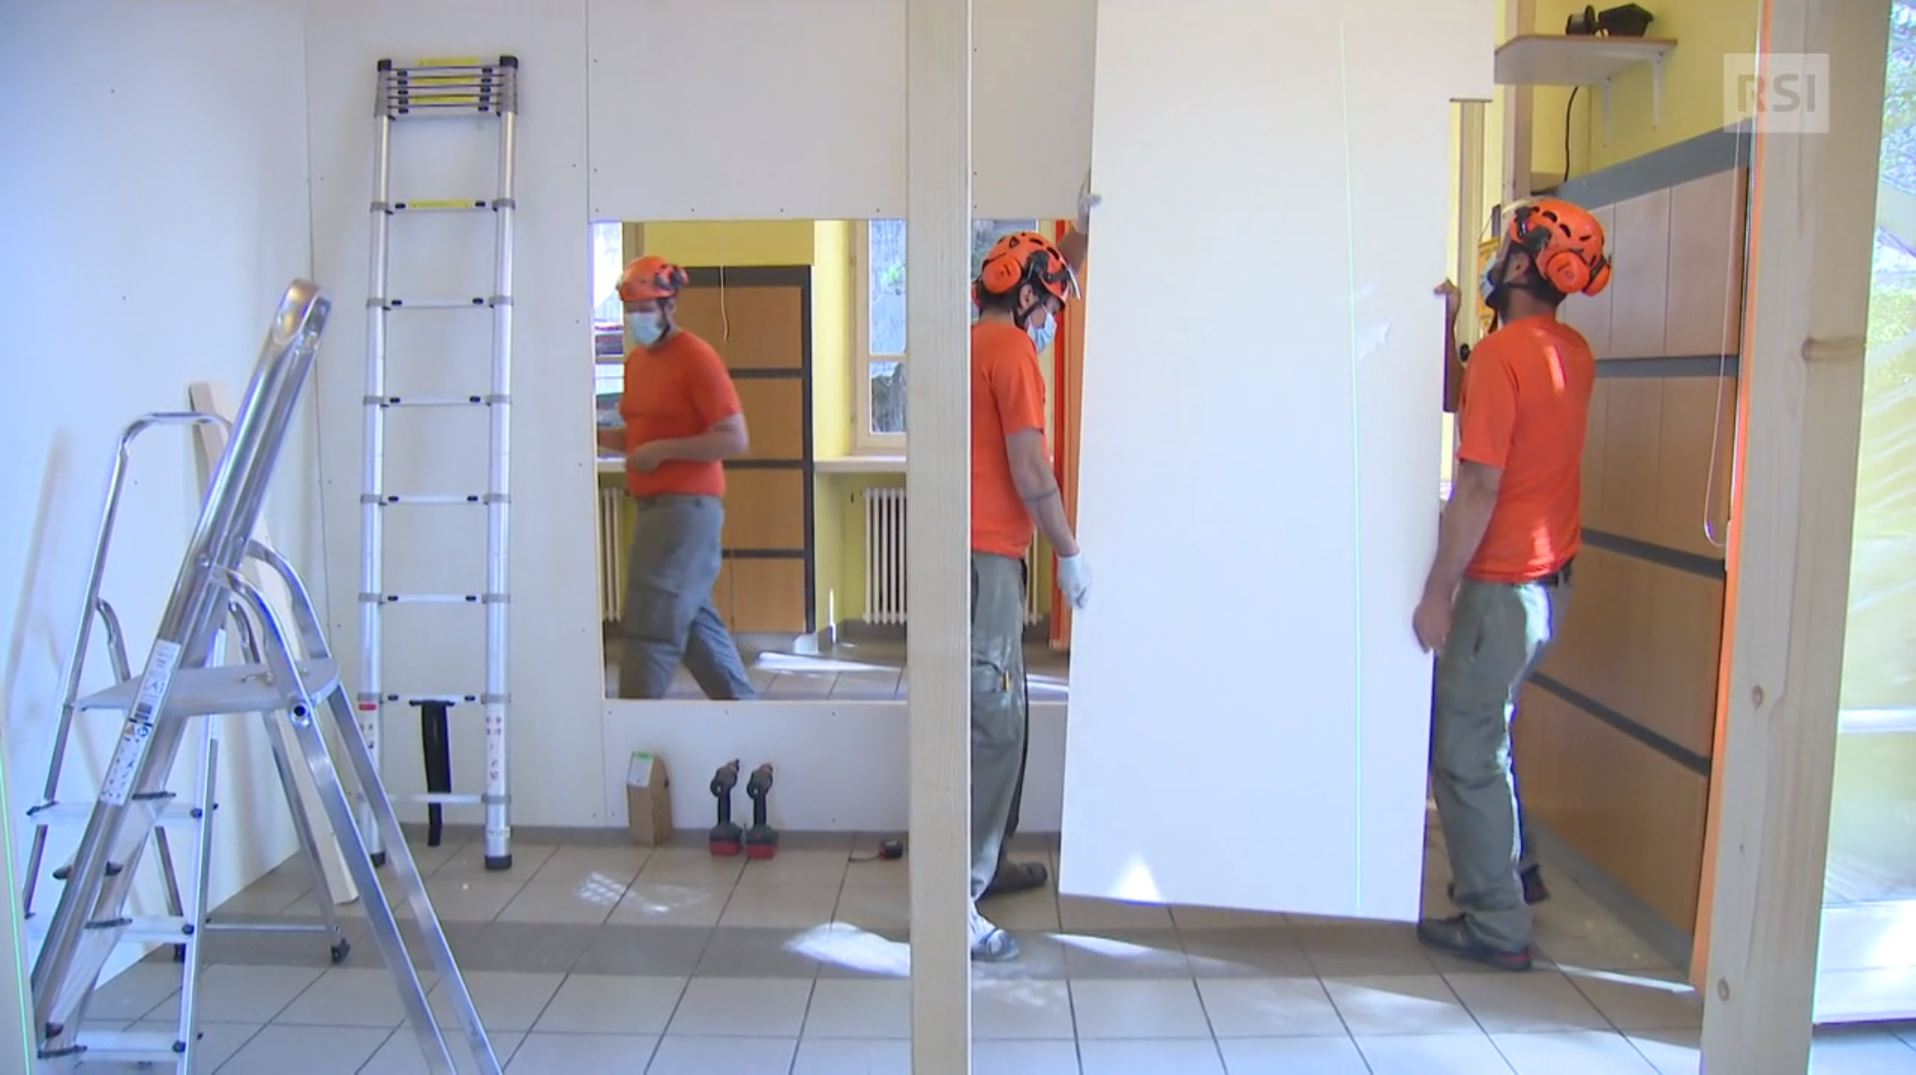 Tre uomini in abiti da lavoro, con maglietta arancione, montano pannelli di separazione in una stanza.